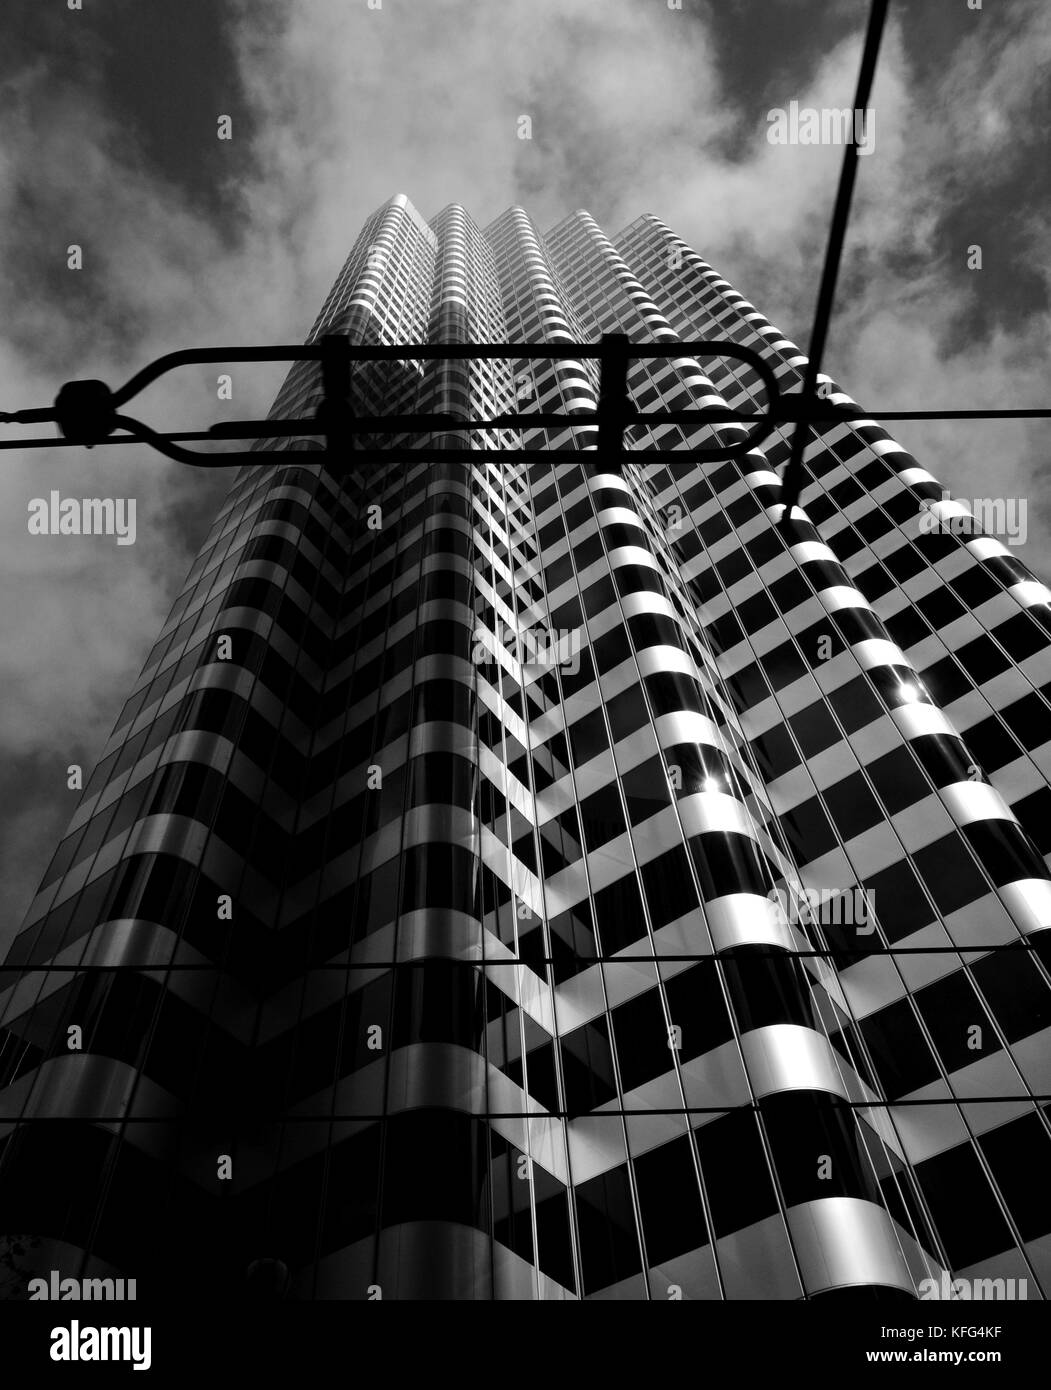 Obstruyeron la vista de patrón de cebra es un edificio alto. Uno Front Street, conocida también como Shaklee Terrazas, es un rascacielos de oficinas en San Francisco, EE.UU. Foto de stock